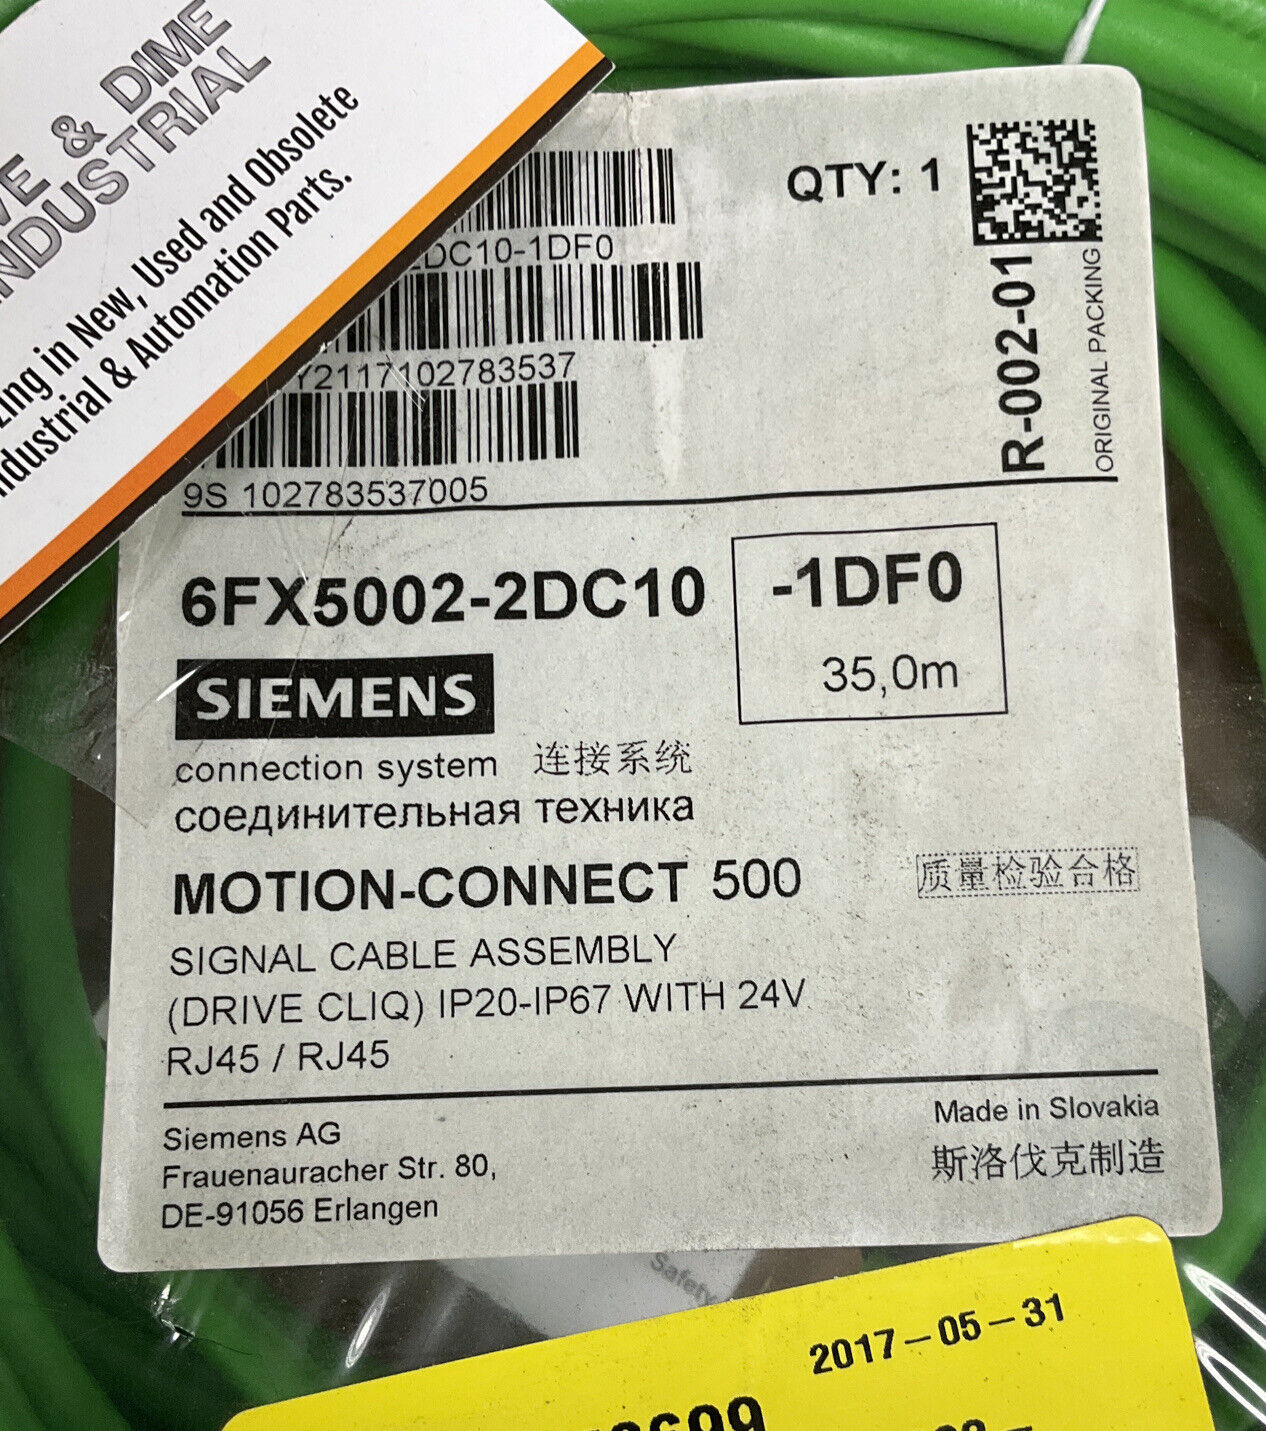 Siemens 6FX5002-2DC10-1DF0 35M Motion-Connect Cable(CBL118)